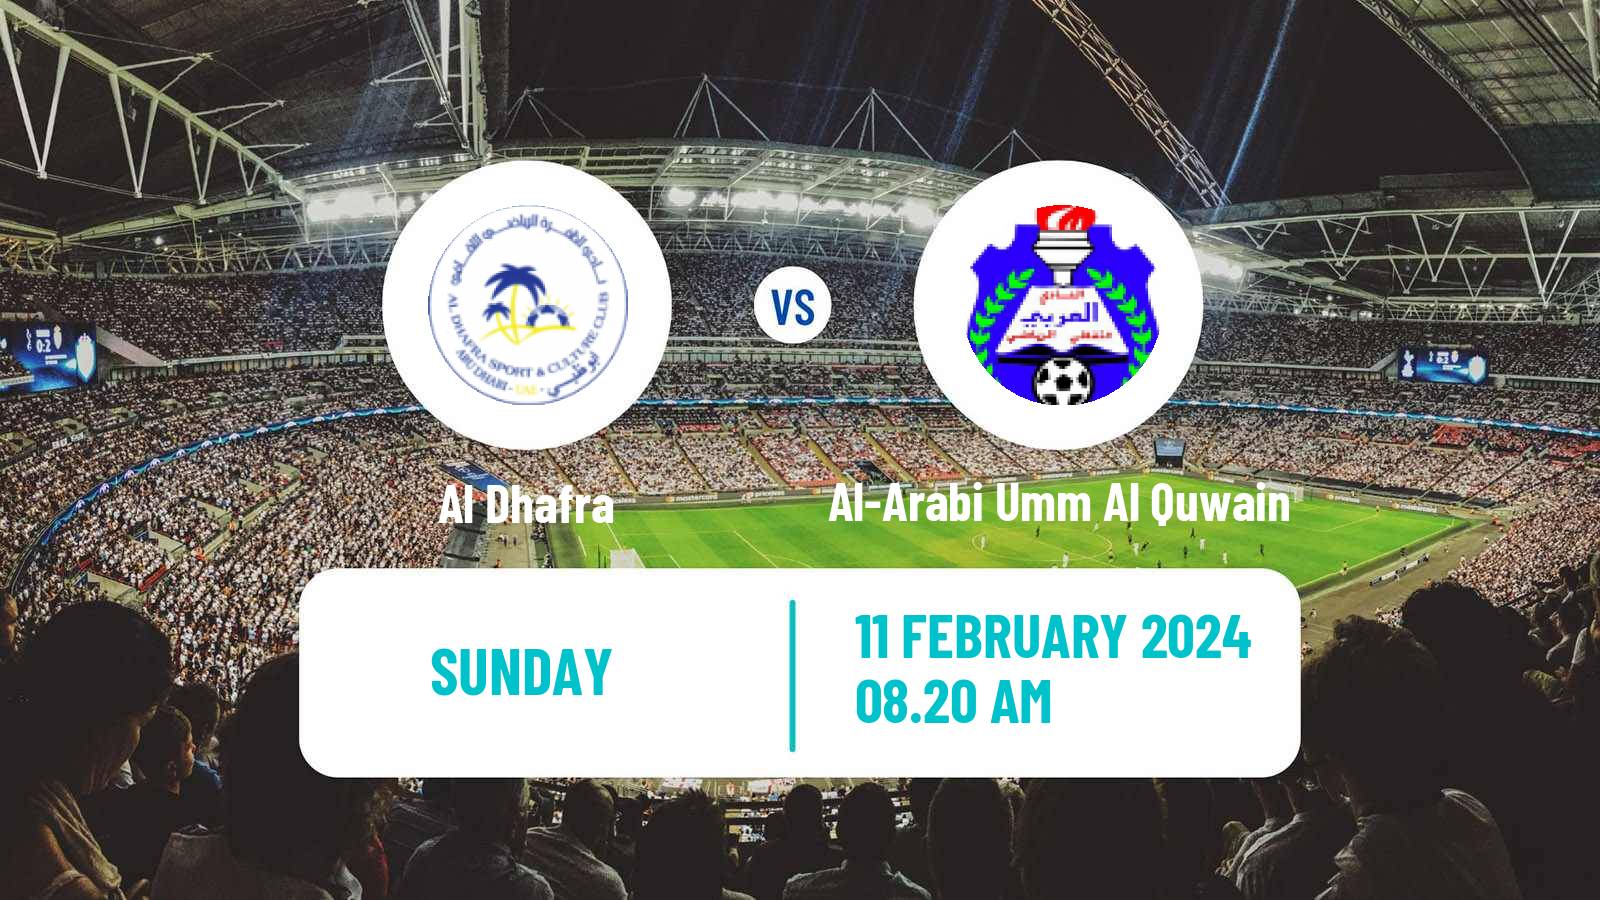 Soccer UAE Division 1 Al Dhafra - Al-Arabi Umm Al Quwain